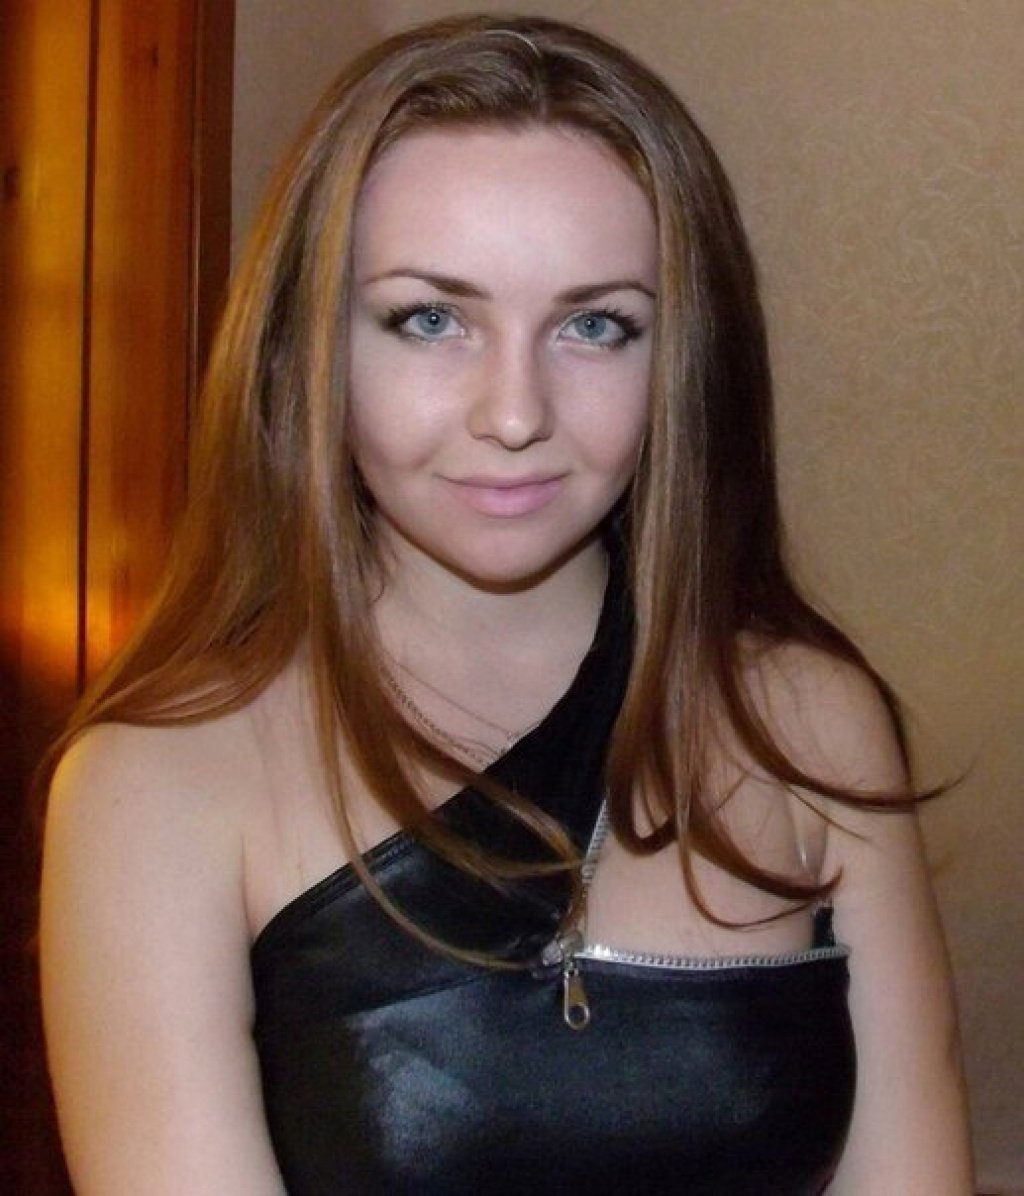 Кристина: Проститутка-индивидуалка во Владивостоке